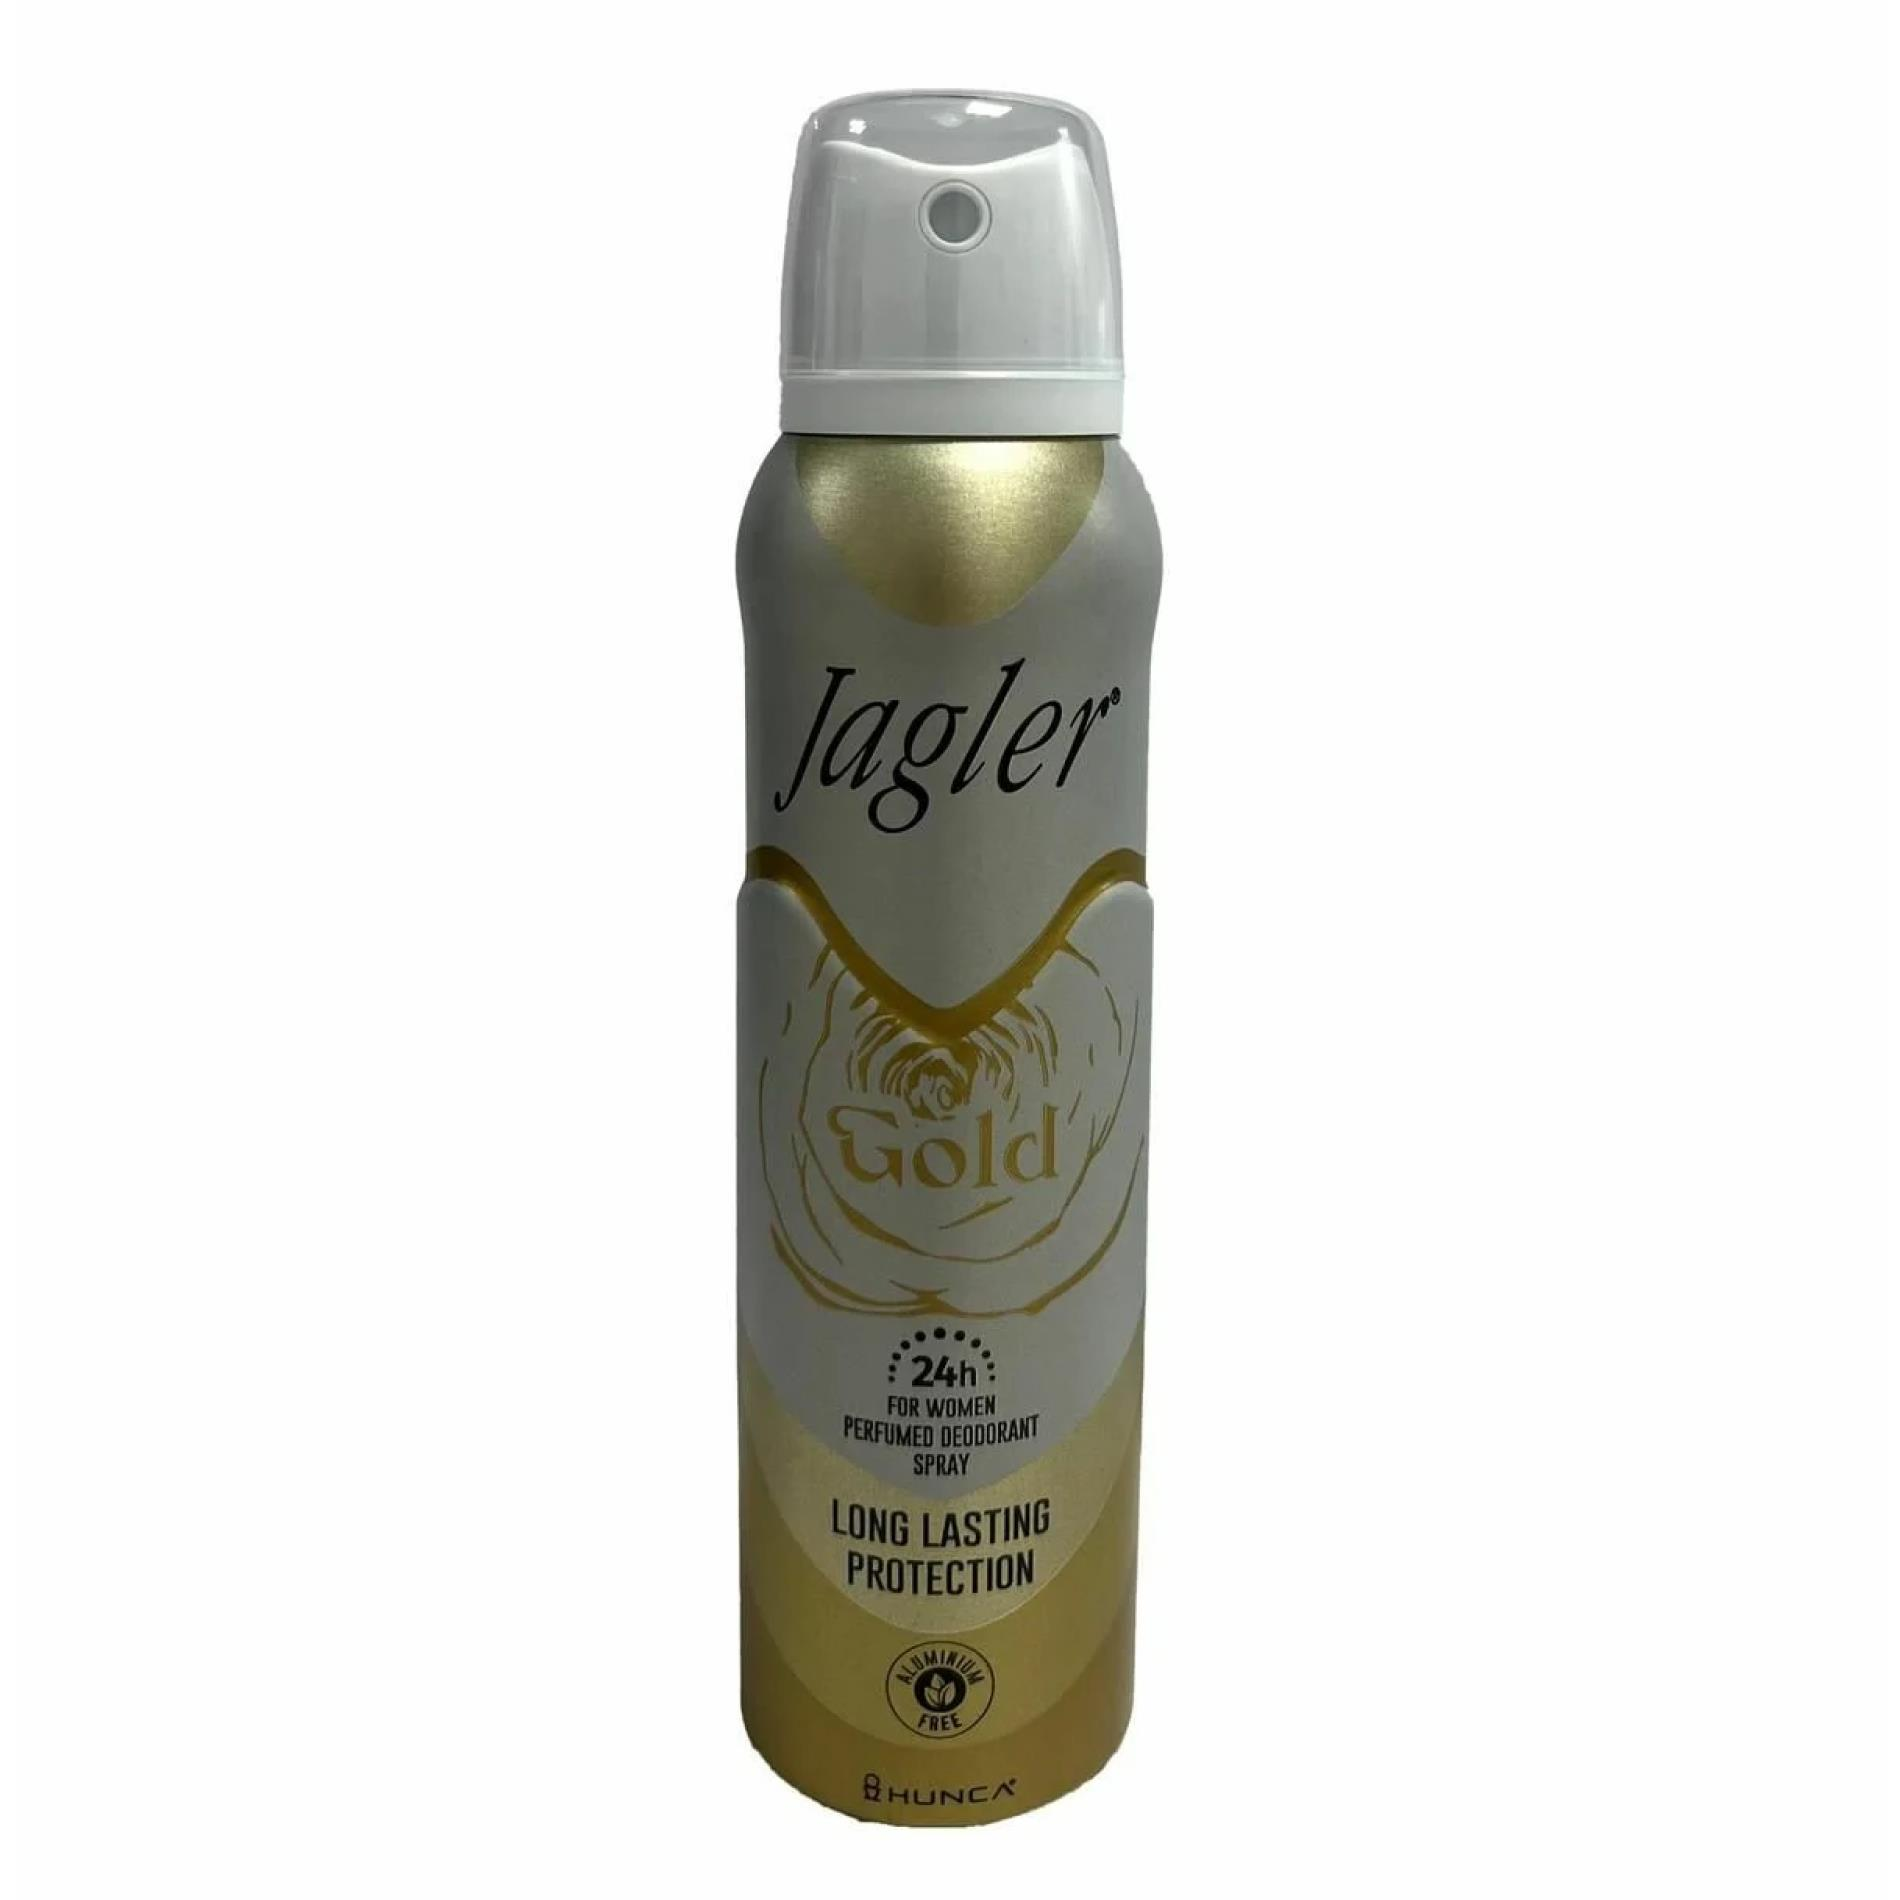 Jagler Deodorant Kadın 150 ml Gold